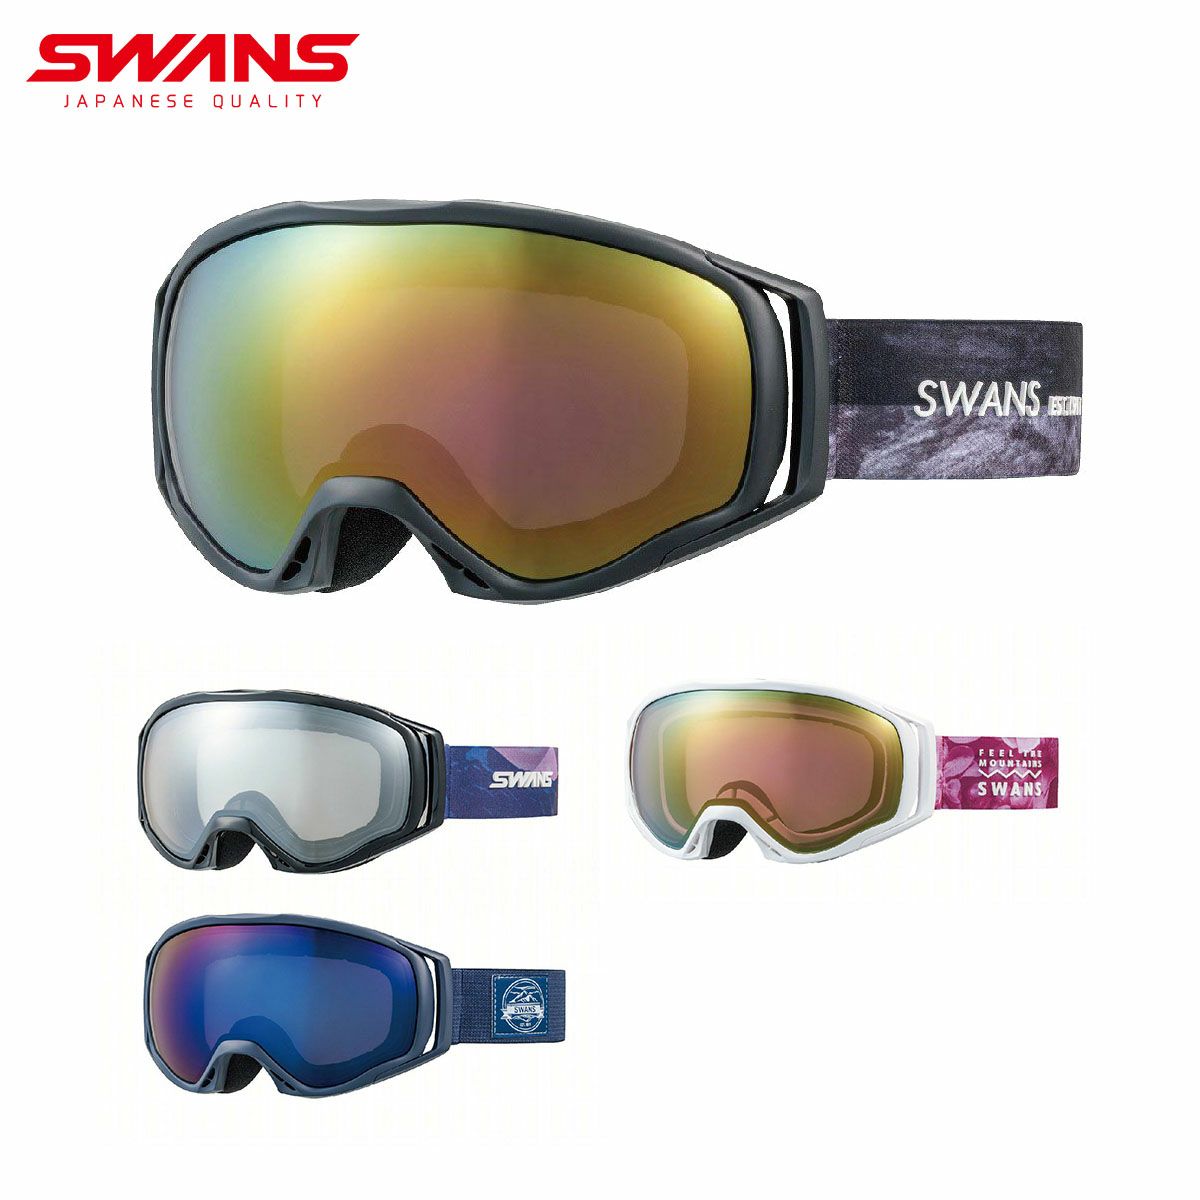 SWANS(スワンズ) スキー スノーボード ゴーグル スペアレンズ RACAN専用レンズ LRA-4470_LSIL, ライトシルバーミラ